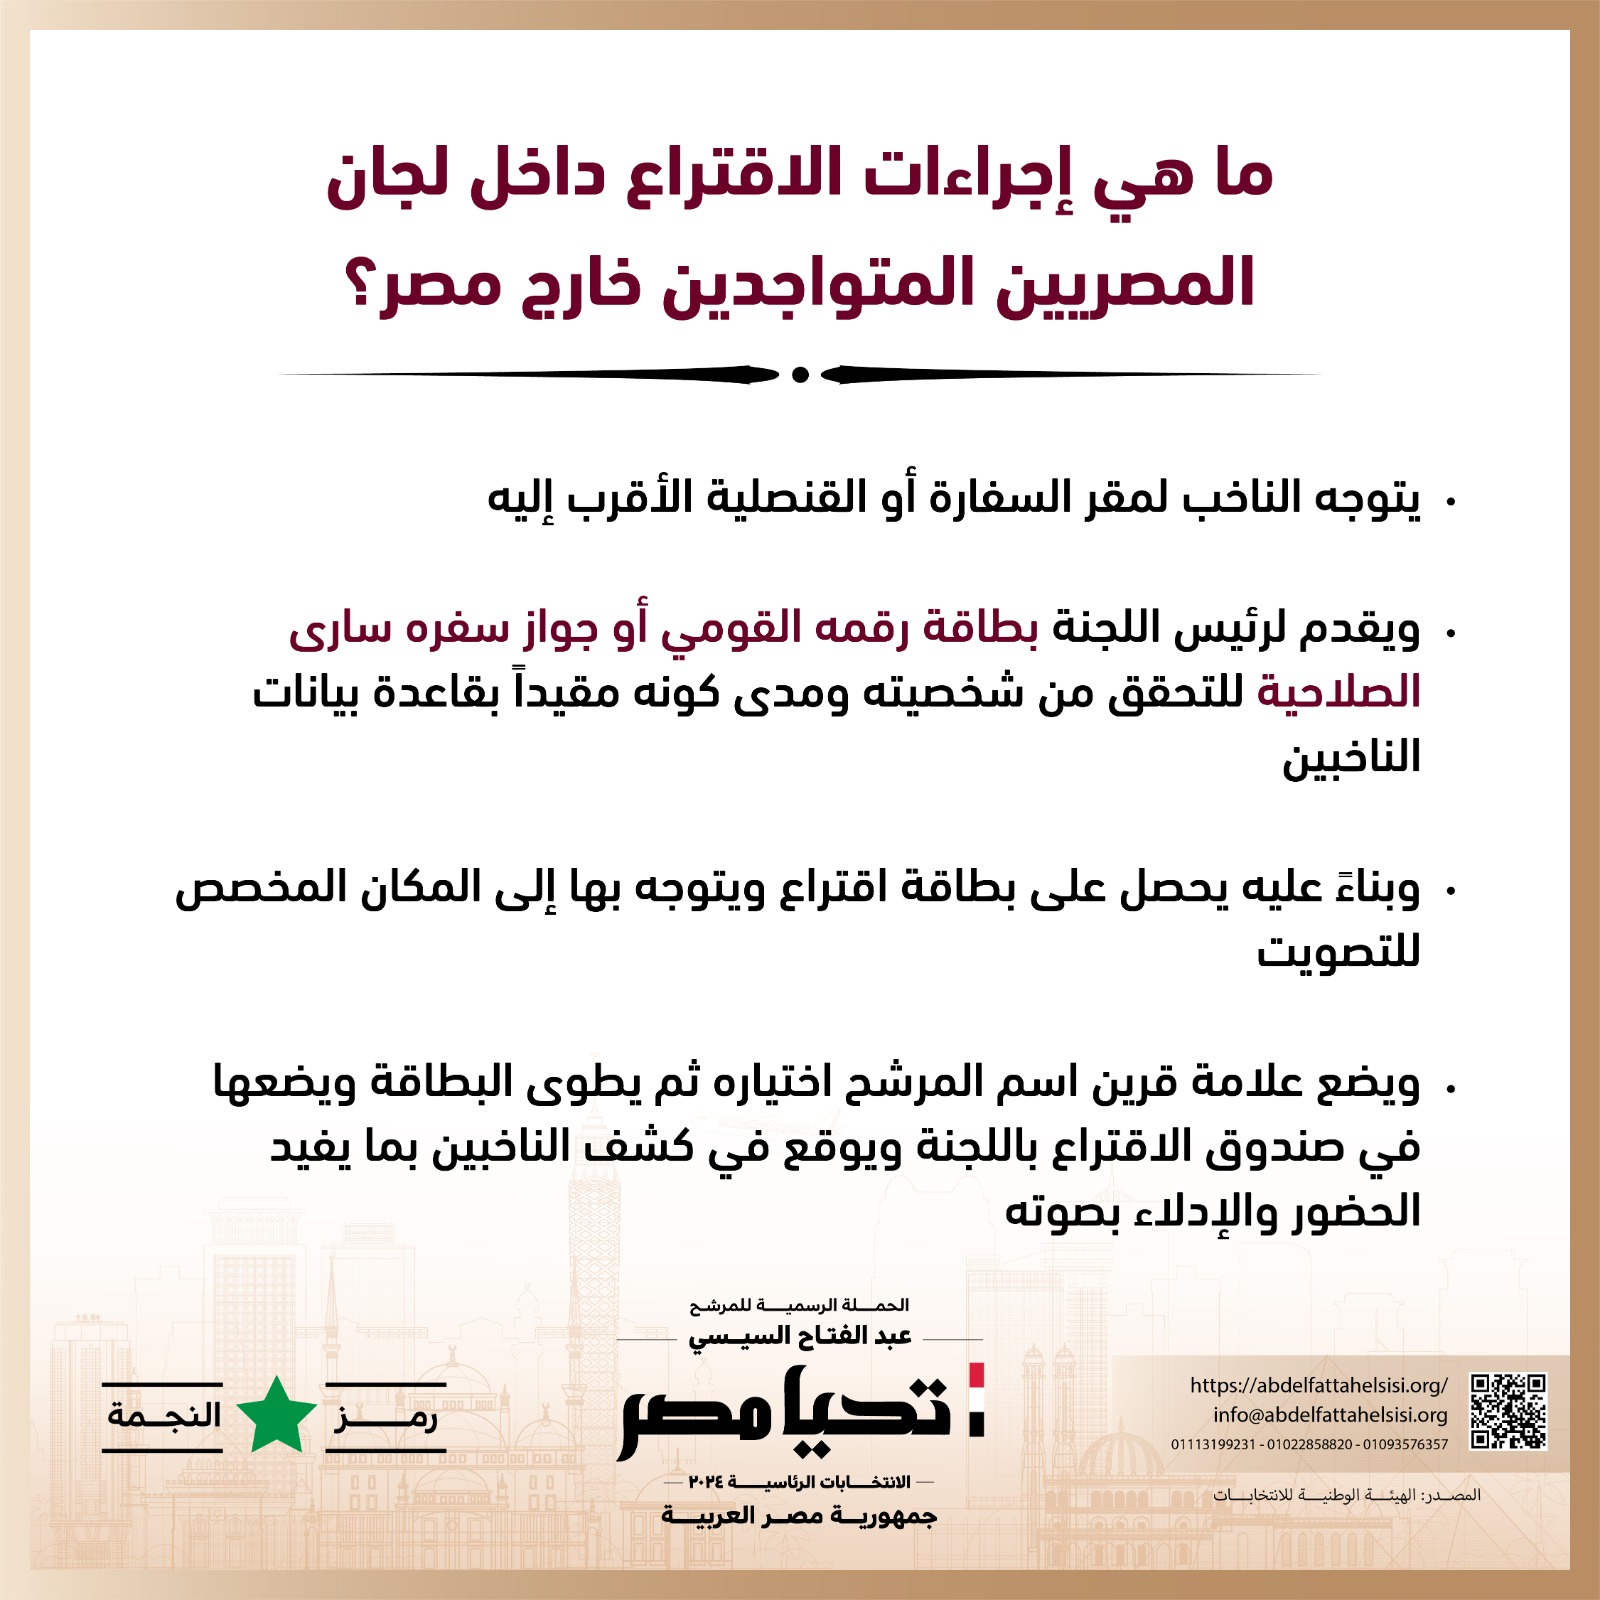 الحملة الرسمية للمرشح عبد الفتاح السيسي  (2)